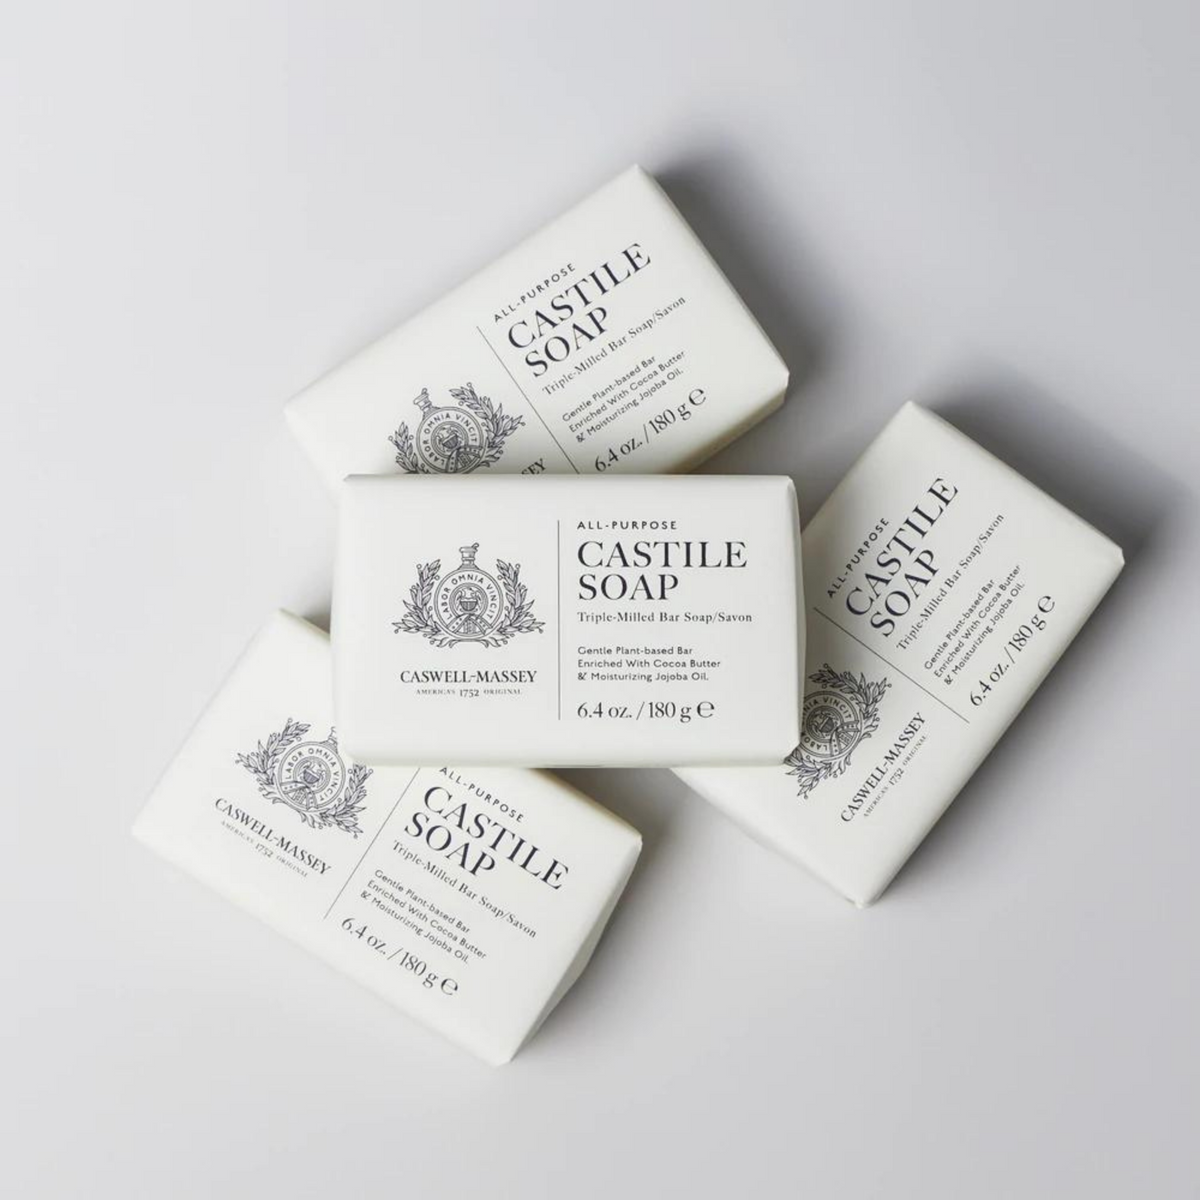 Caswell-Massey Dr. Hunter's Castile Soap (6.5 oz) #2134